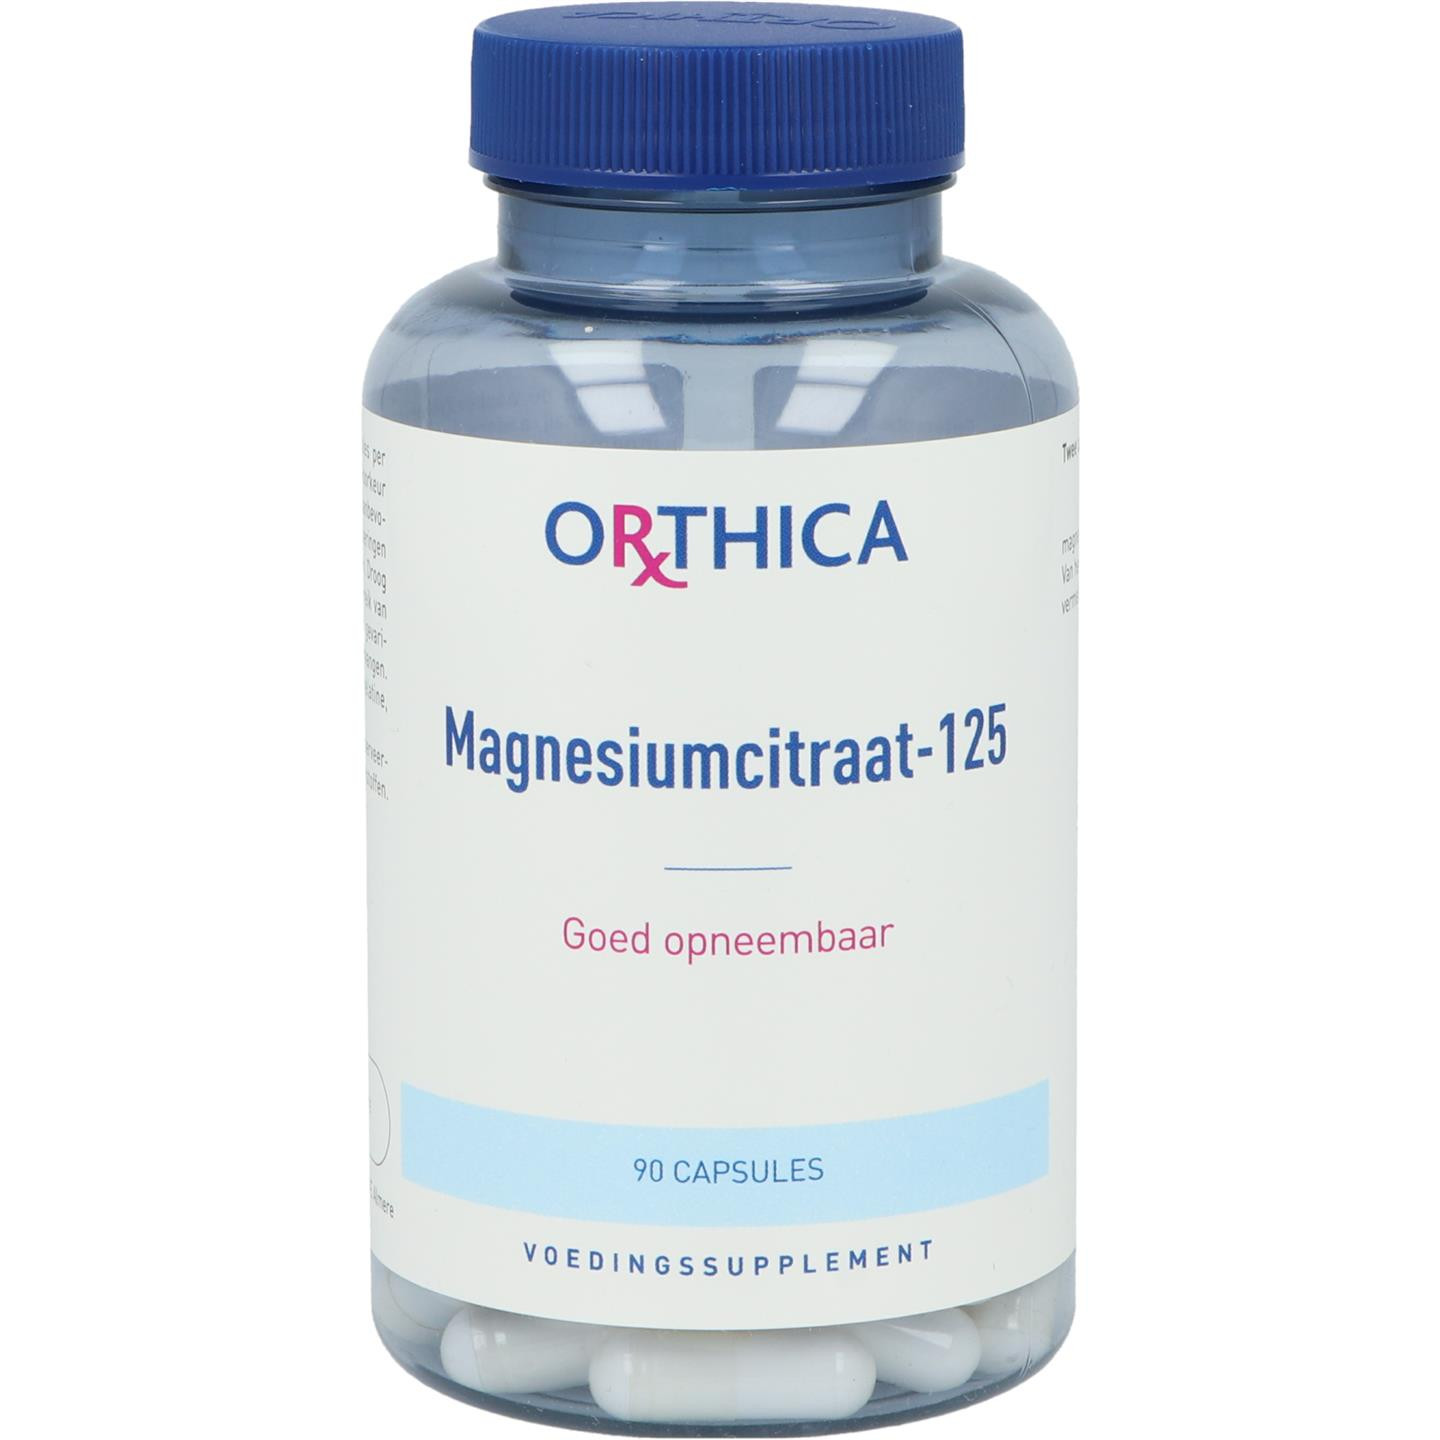 Magnesiumcitraat-125